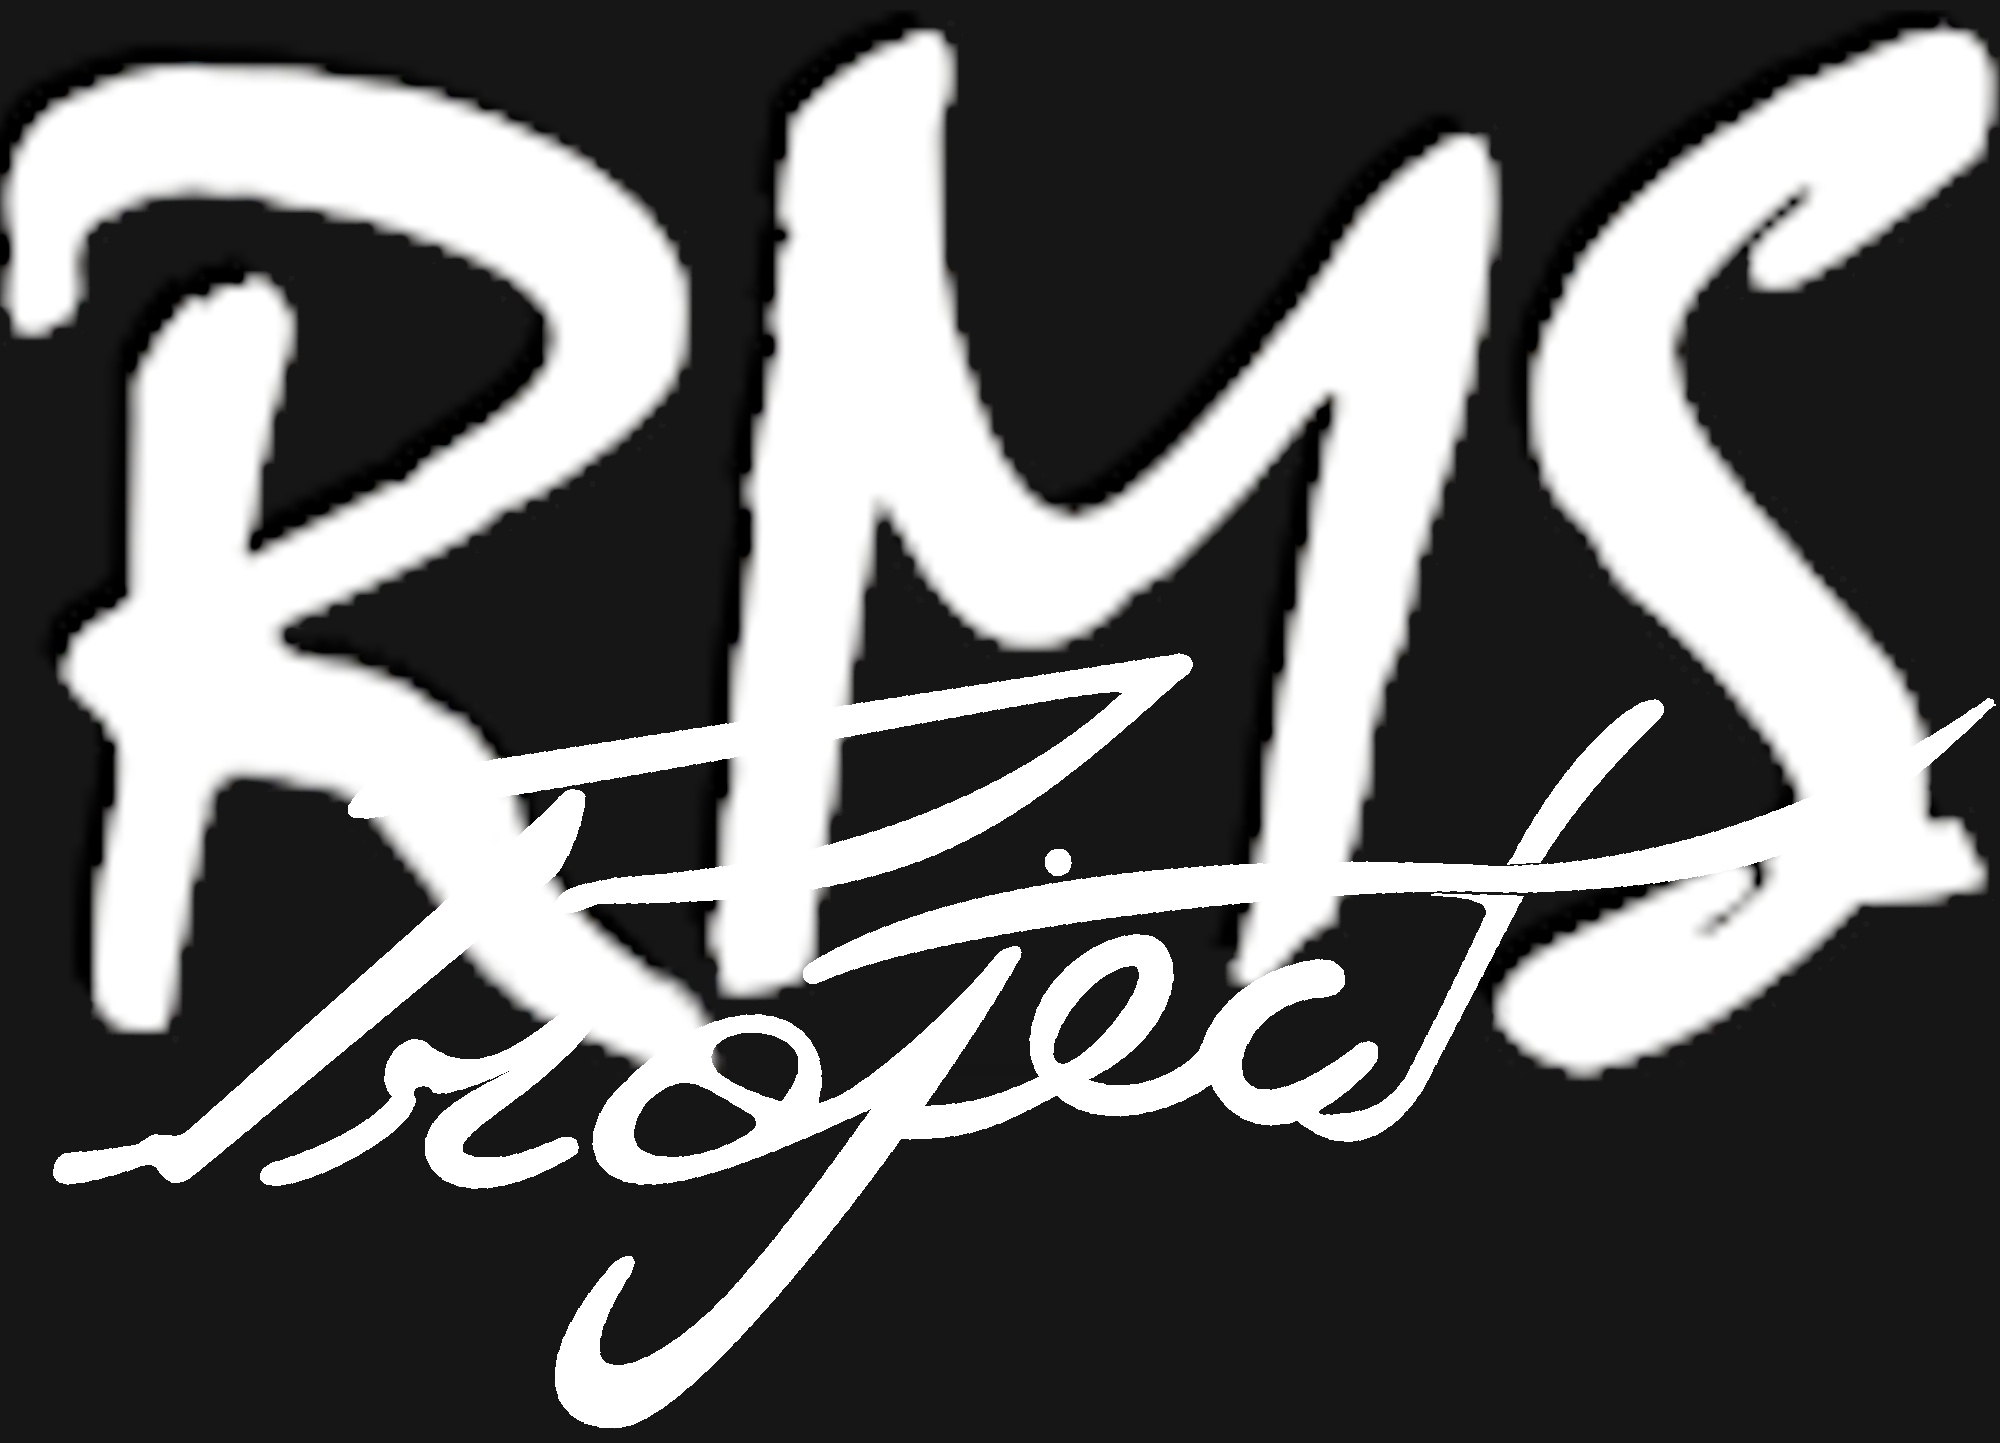 Logo que contém as letras iniciais de meu nome R. M. S. - Rodrigo Messias da Silva